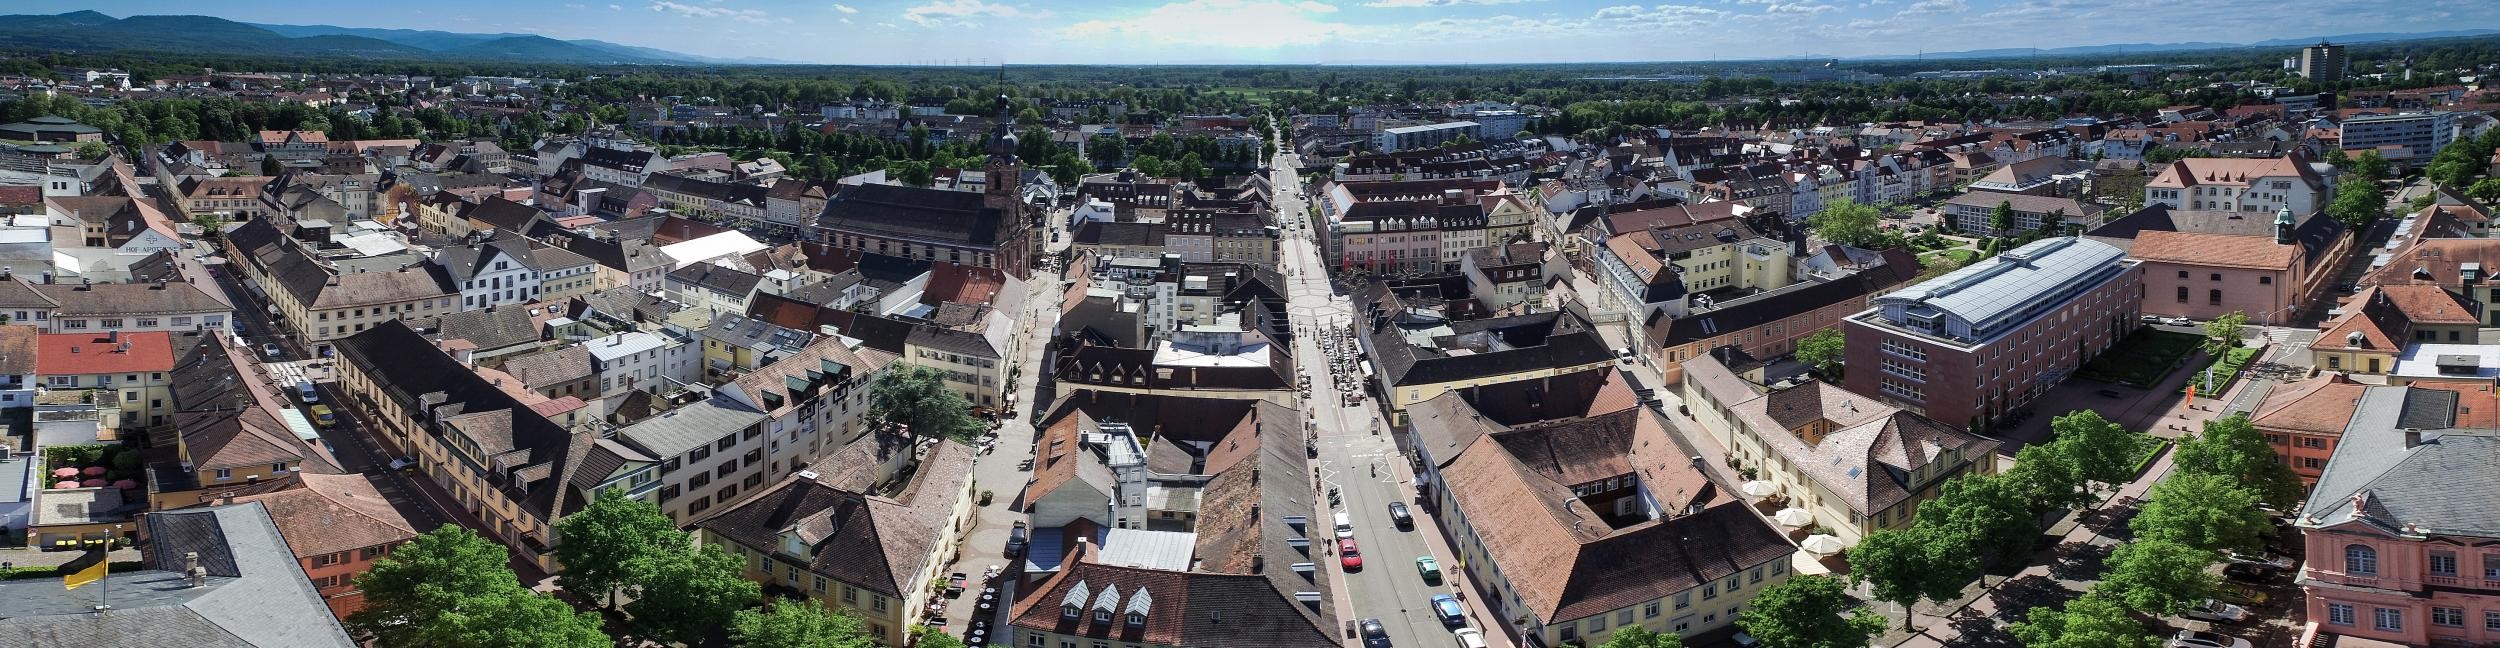 Aerial view of Rastatt city center